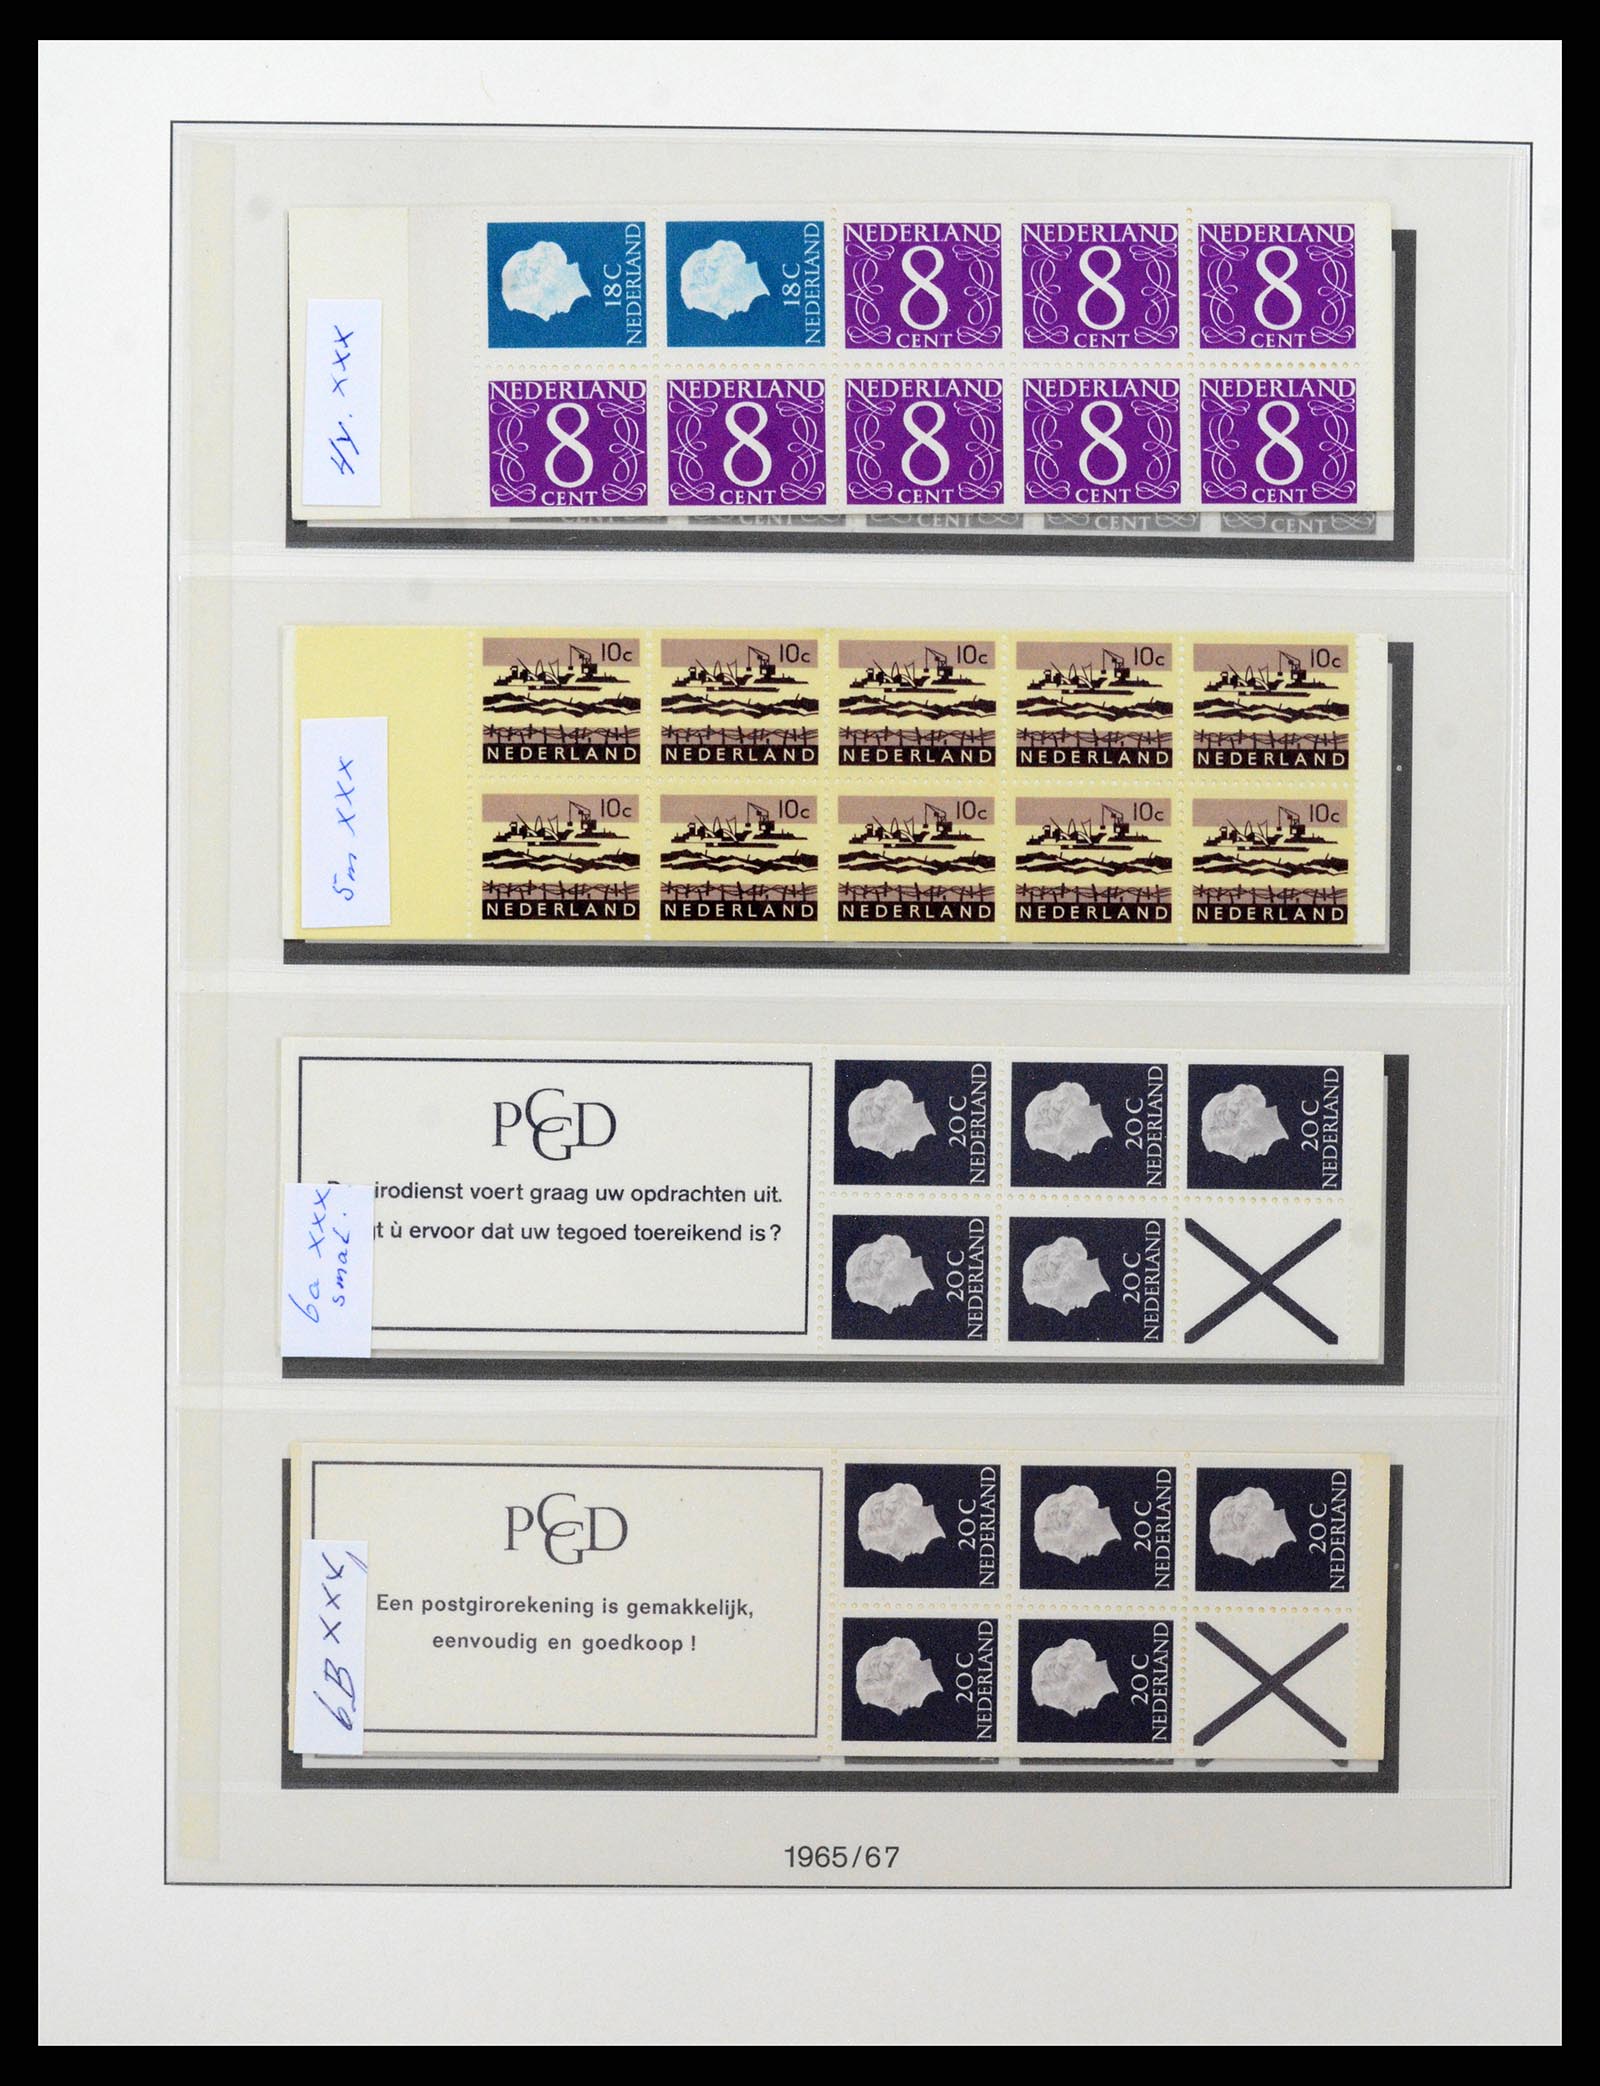 37994 004 - Stamp Collection 37994 Netherlands stampbooklets 1964-2002.